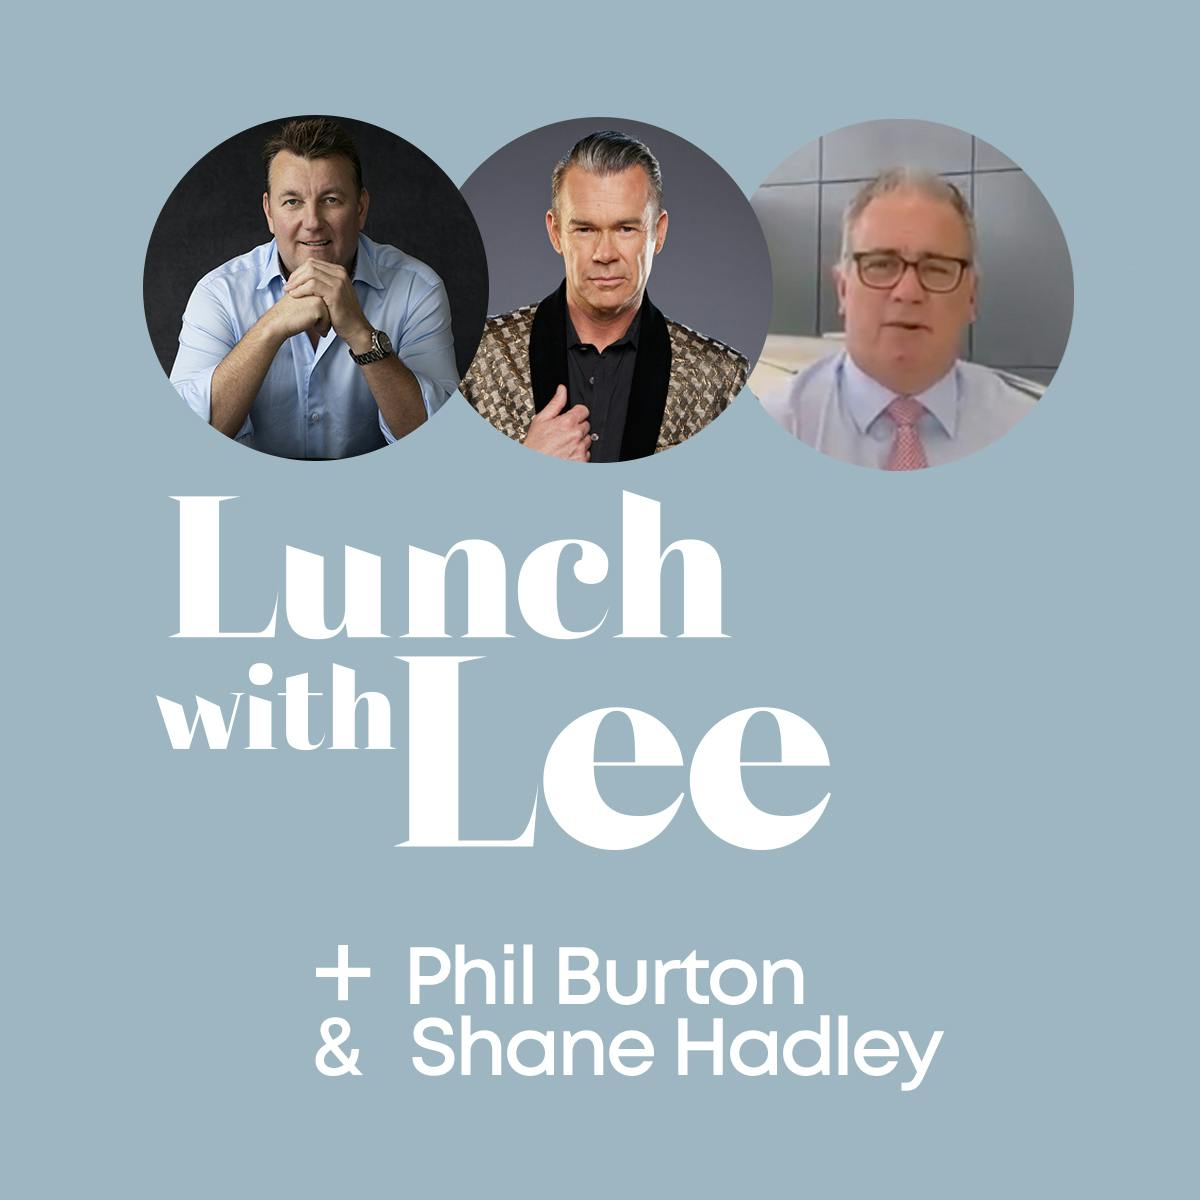 Lunch with Phil Burton & Shane Hadley